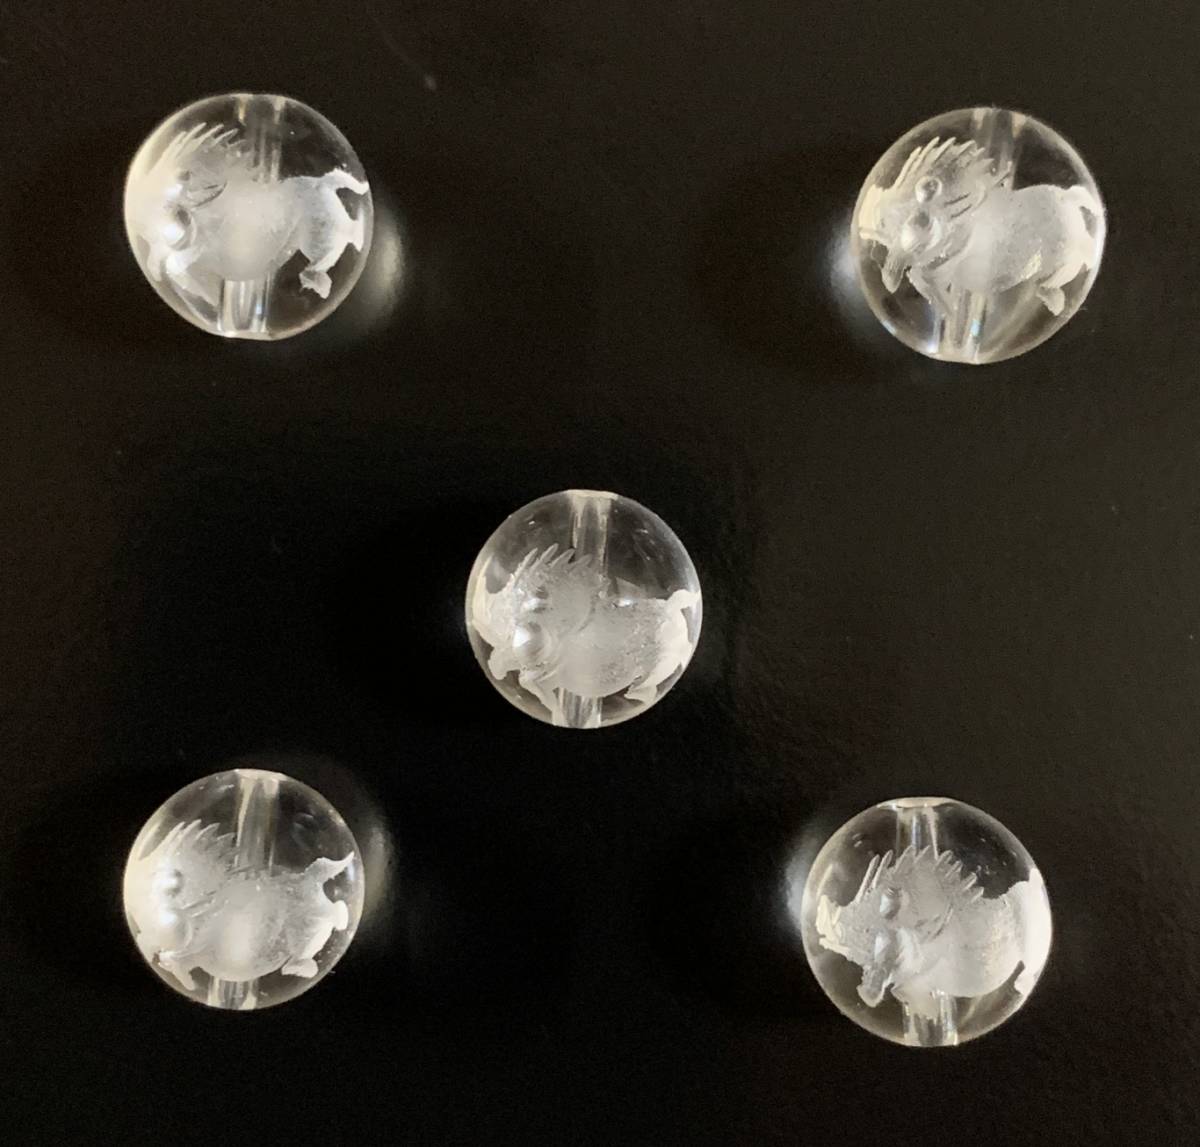 天然石彫り水晶 亥(いのしし) 12mm玉 5粒セット